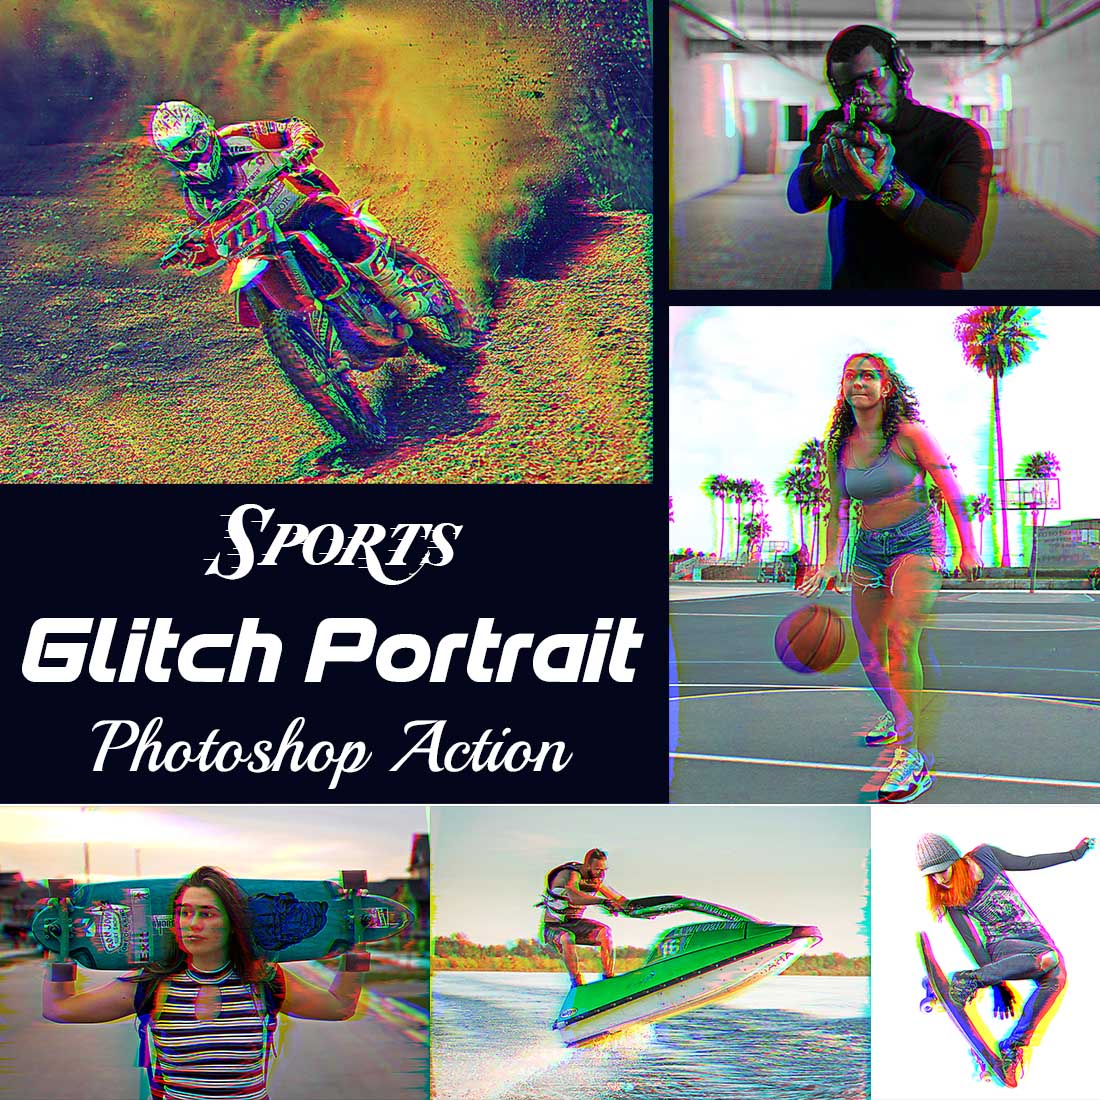 Sports Glitch Portrait Photoshop Action cover image.